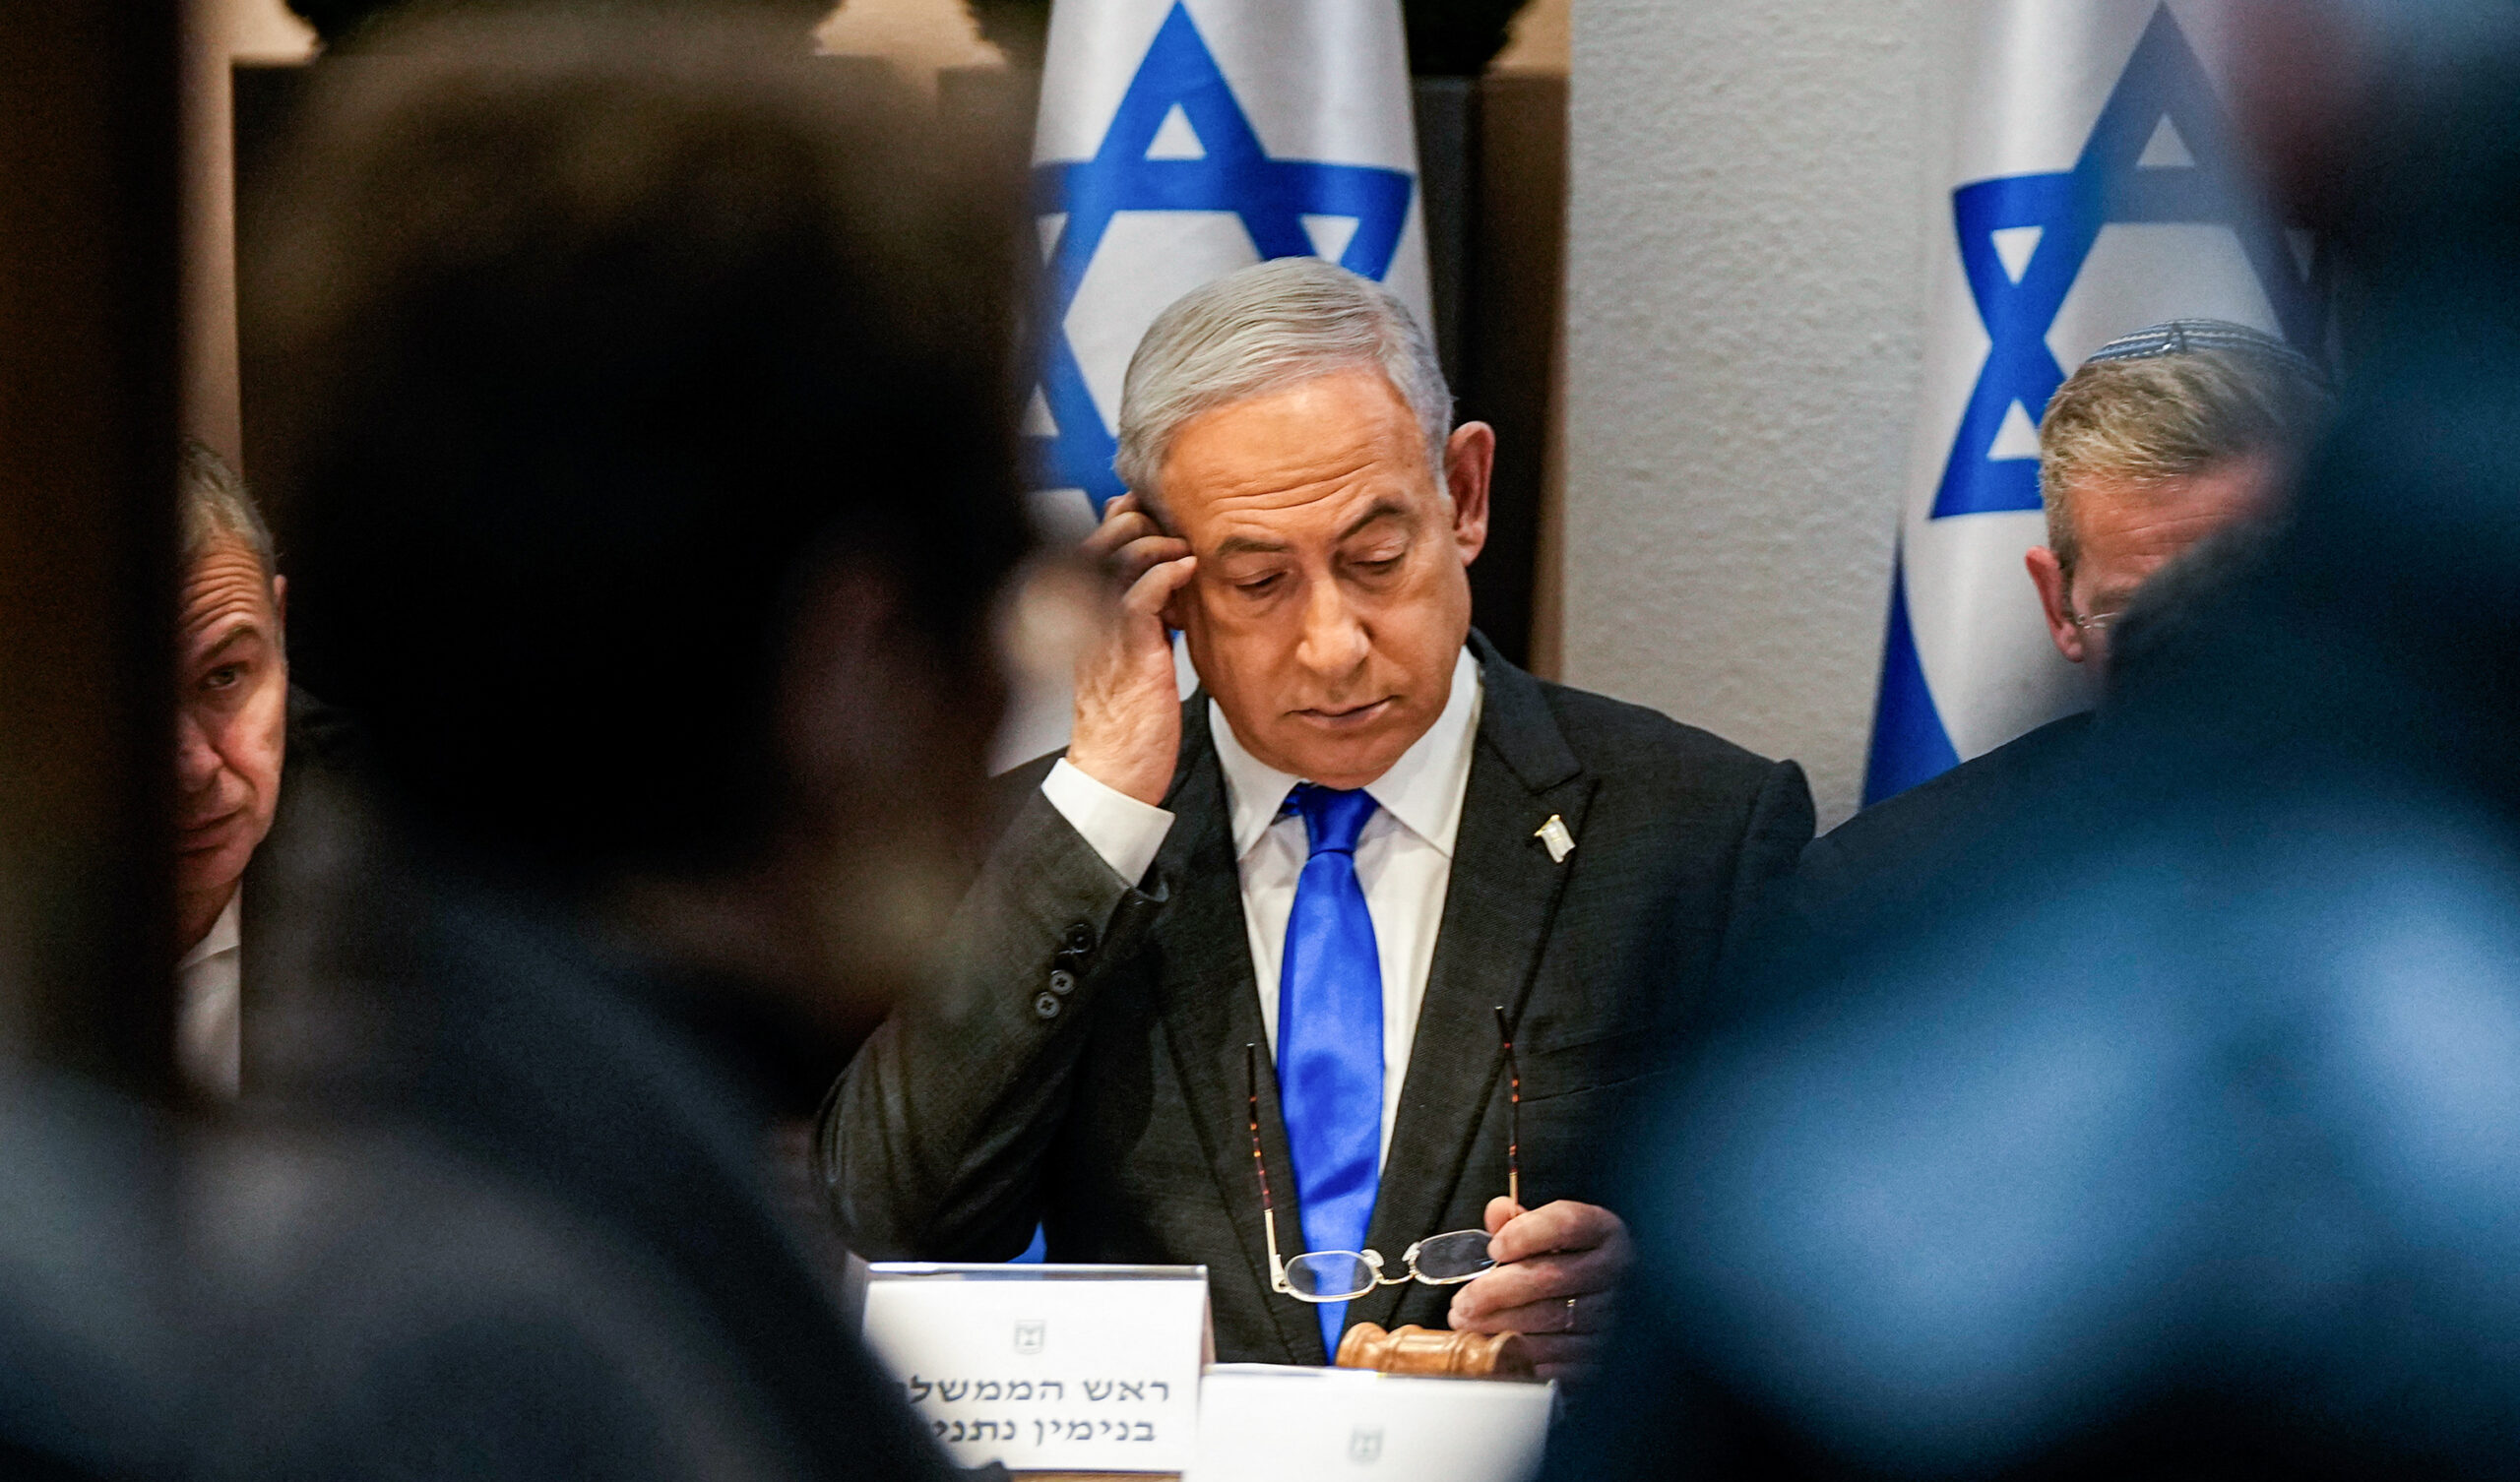 Netanyahu, marcia indietro: non esclude lo stato di Palestina